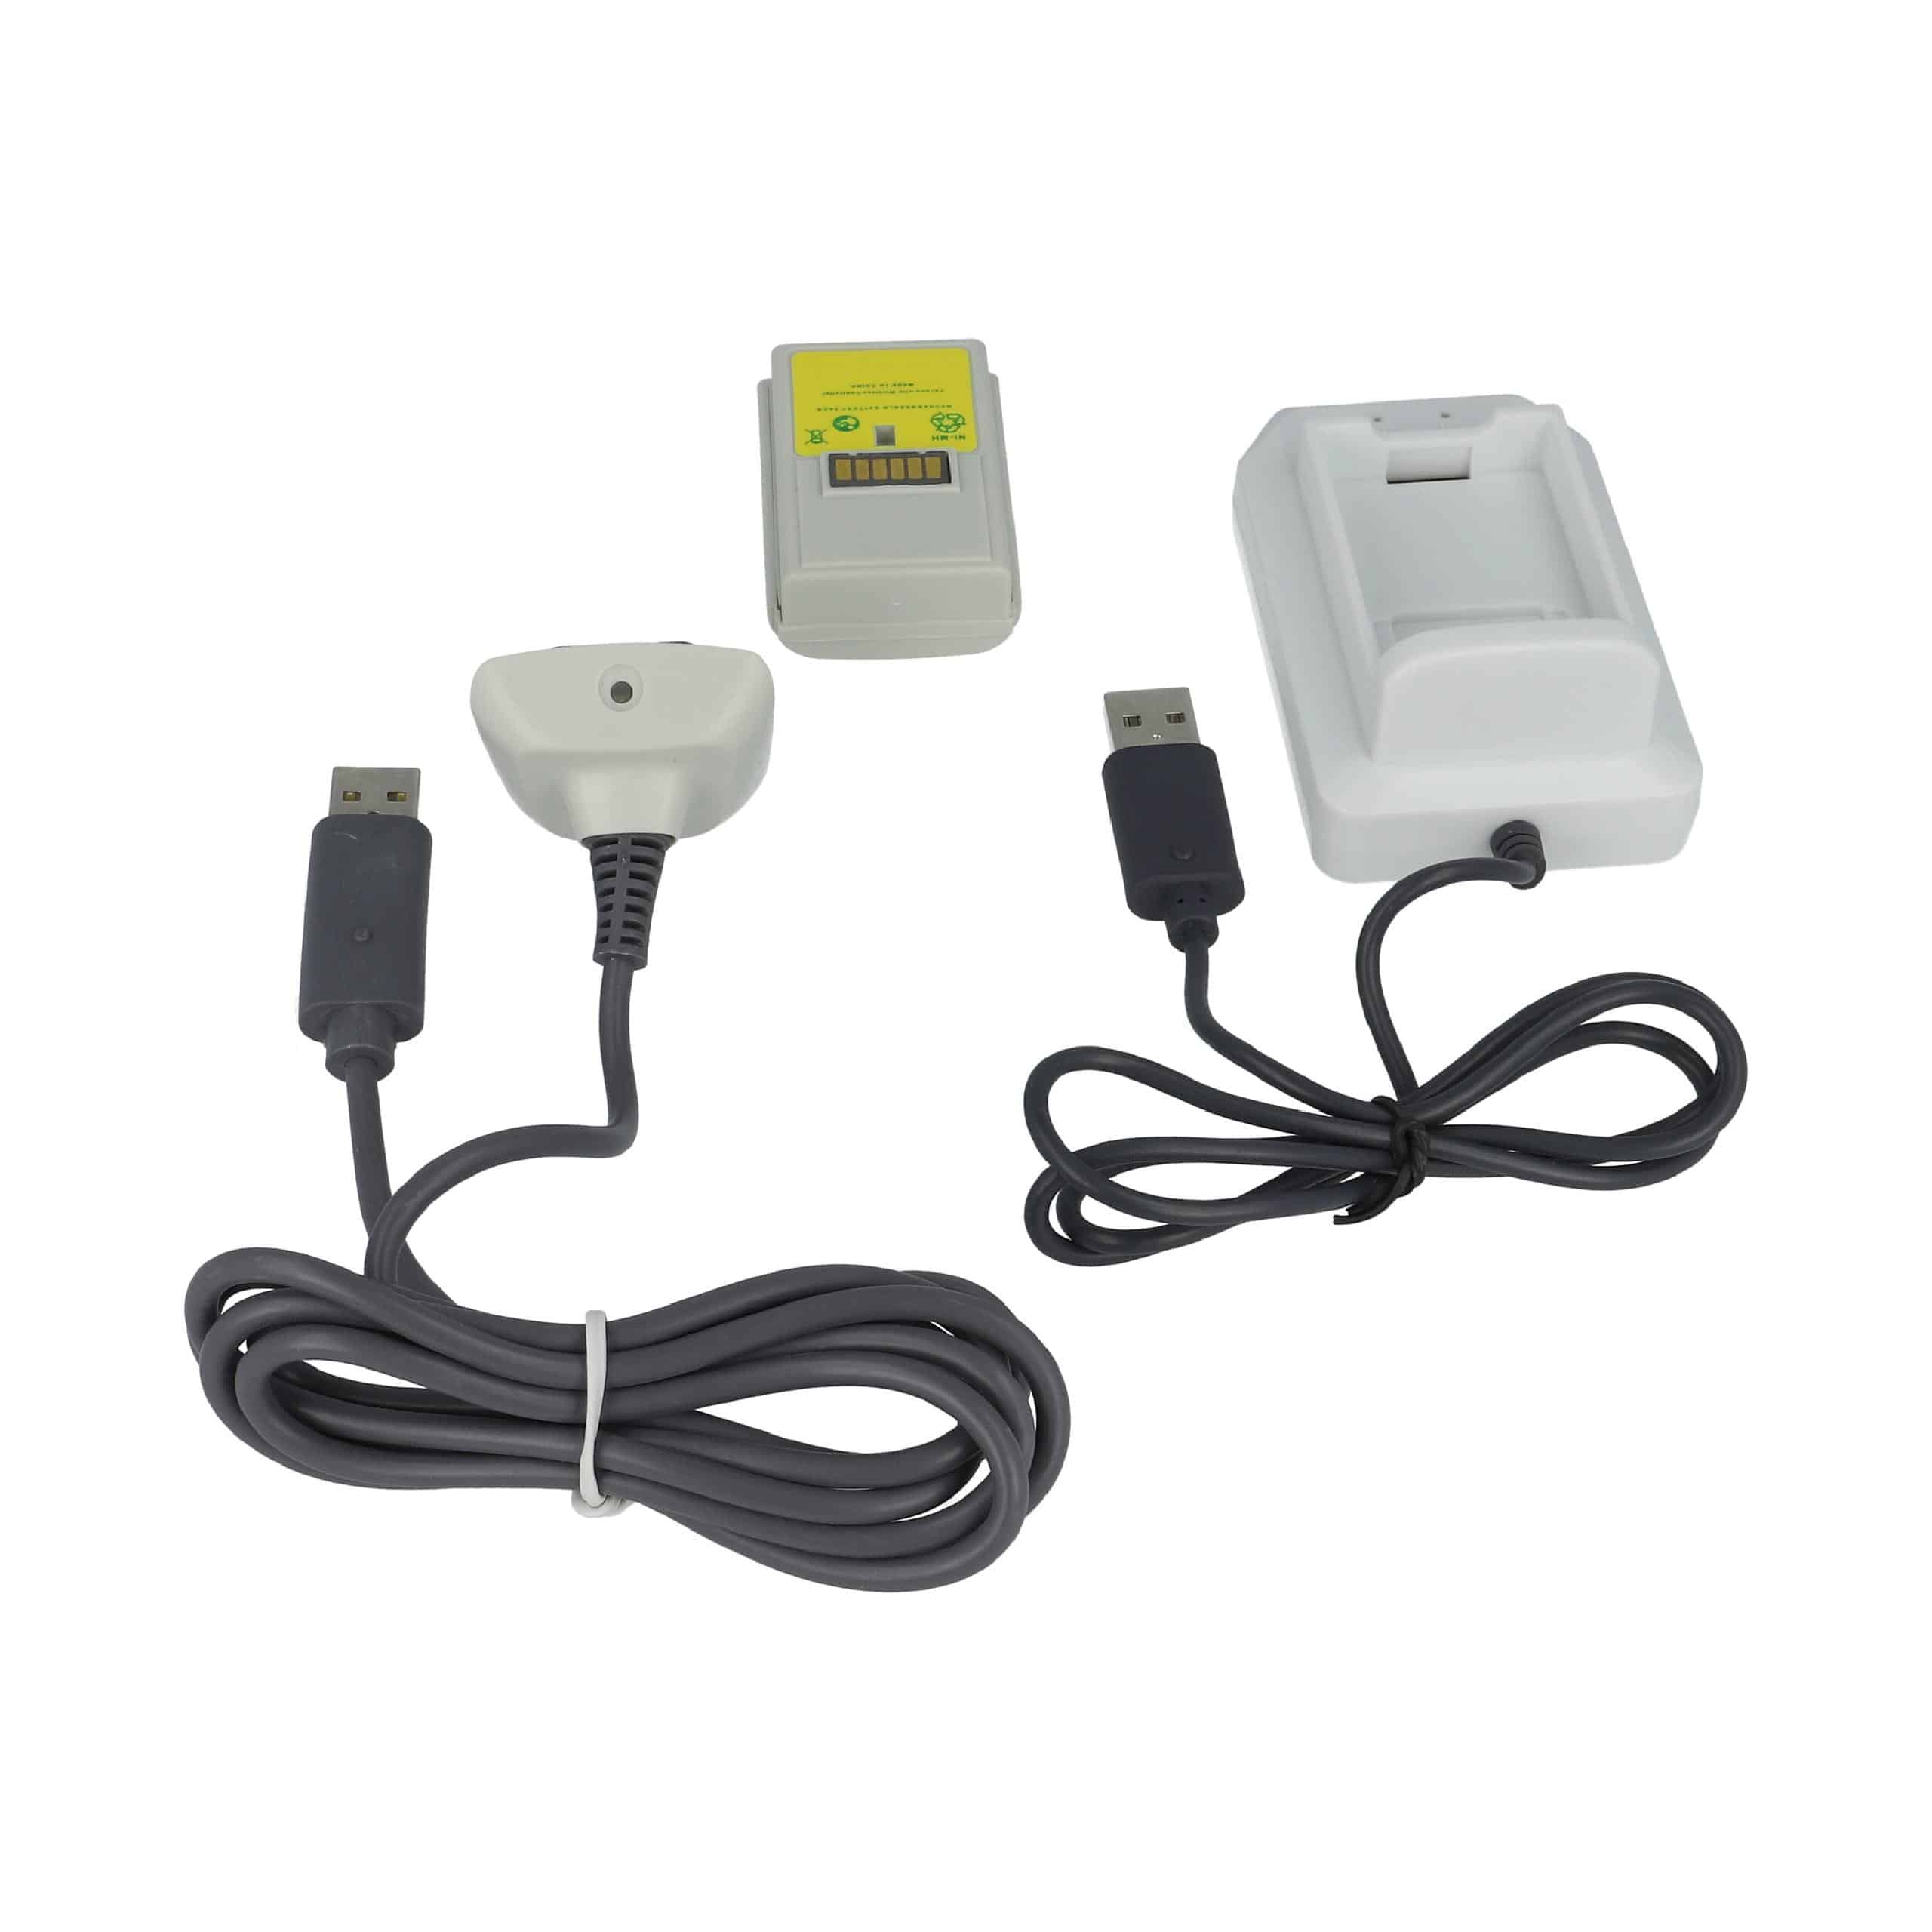 vhbw Kit carga y juega - 1x cargador, 1x cable de carga, 1x batería negro / blanco / gris